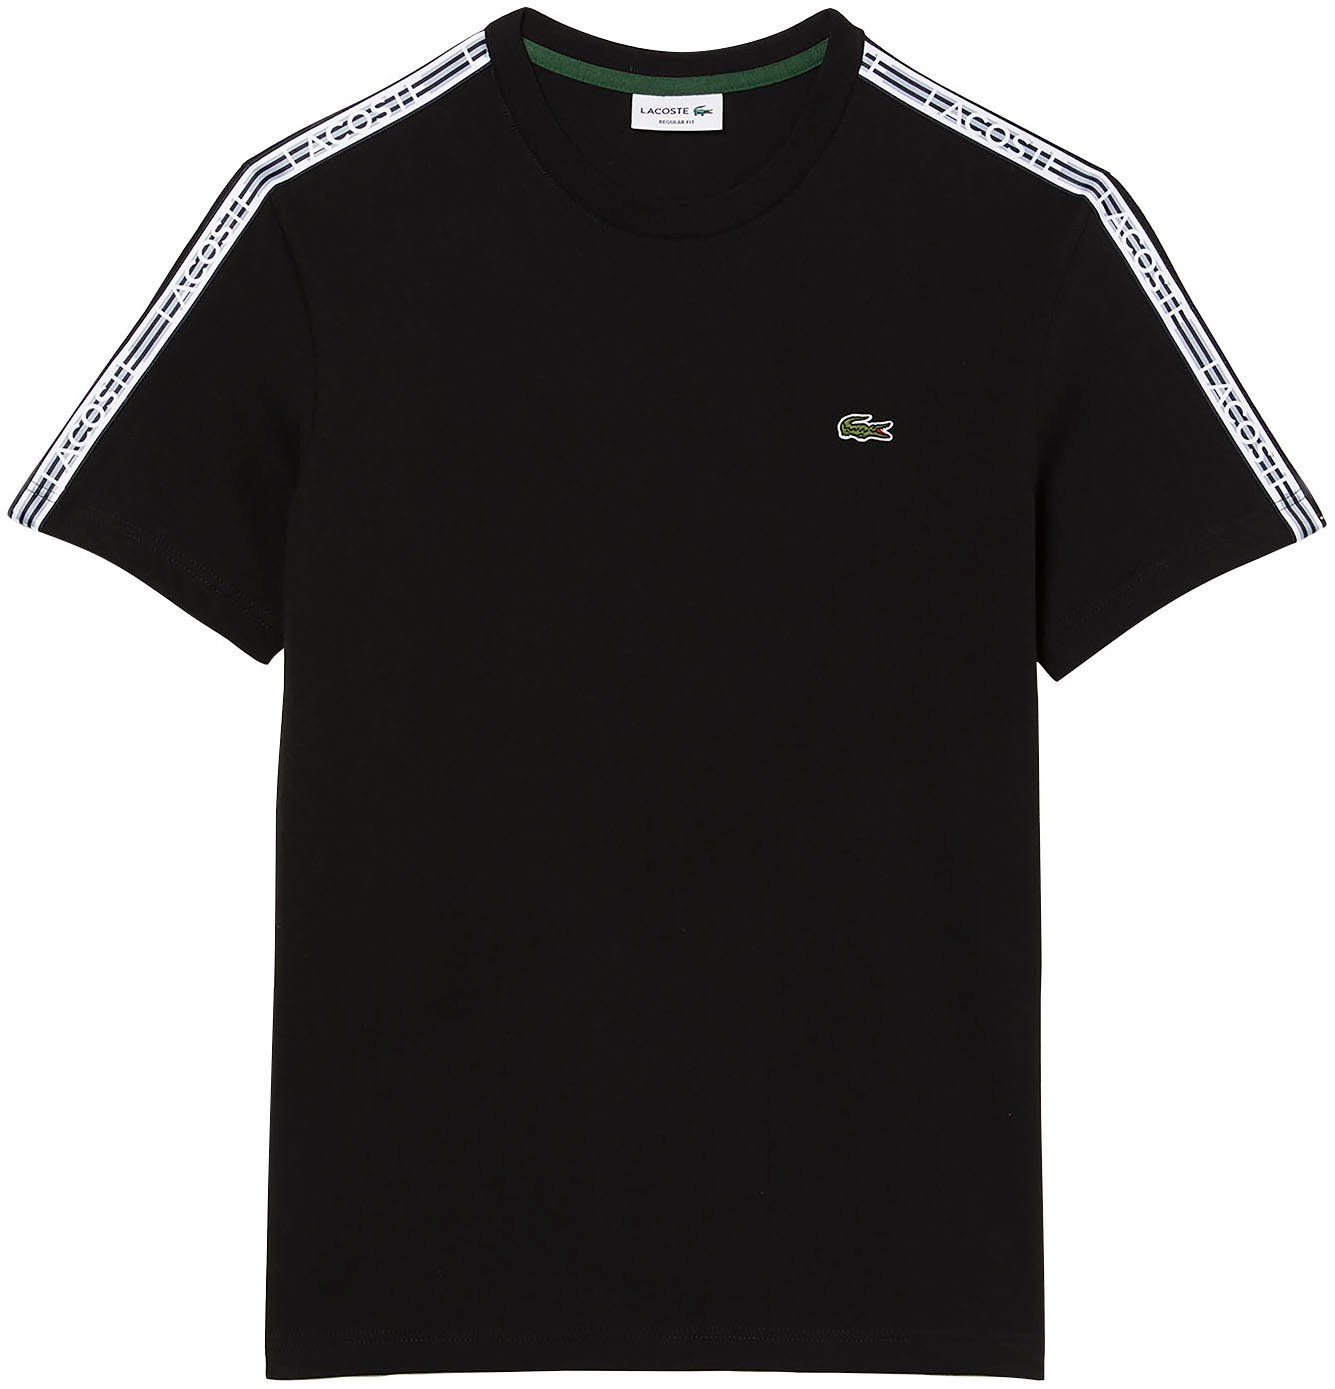 Lacoste T-Shirt Kontrastband beschriftetem black mit Schultern an den